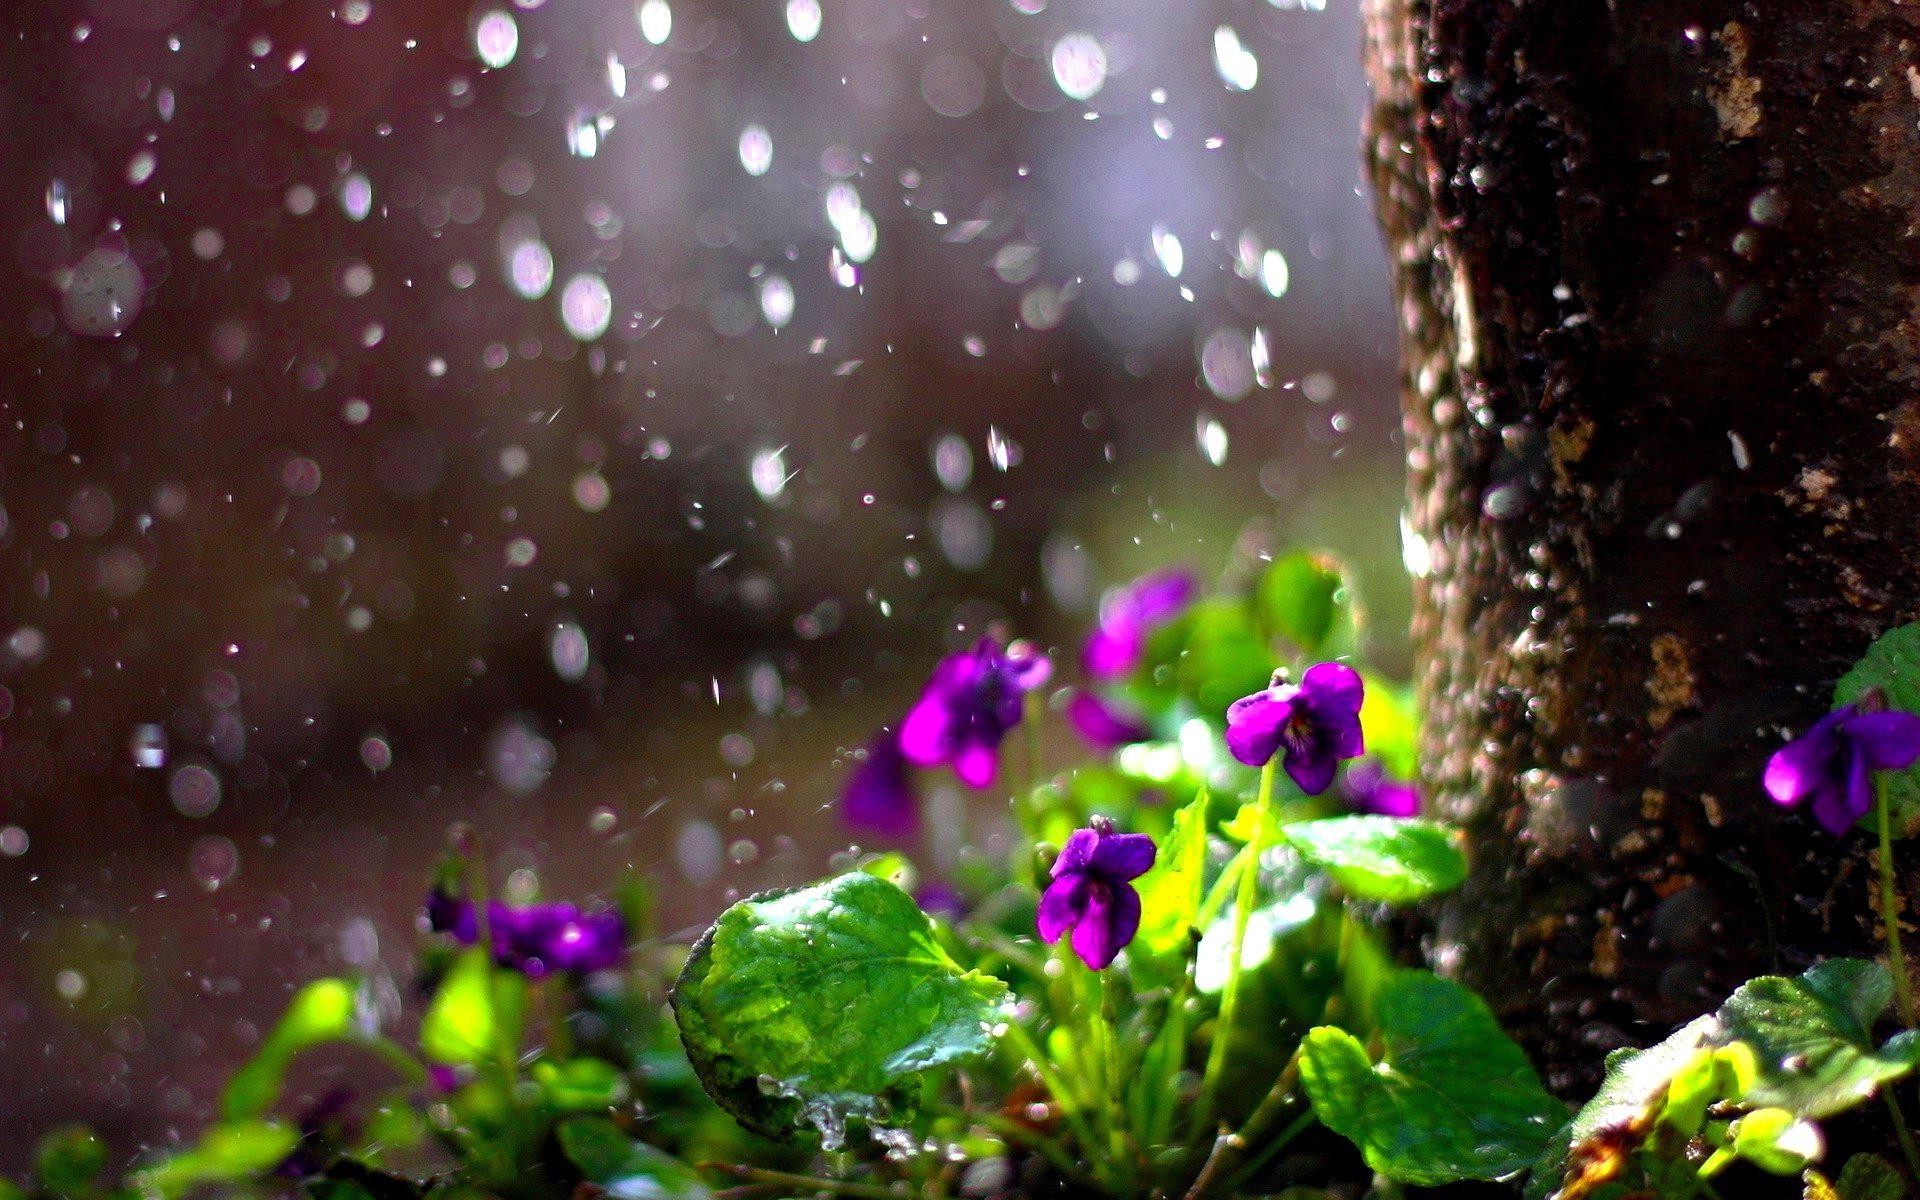 Spring Rain Wallpaper For Desktop Image